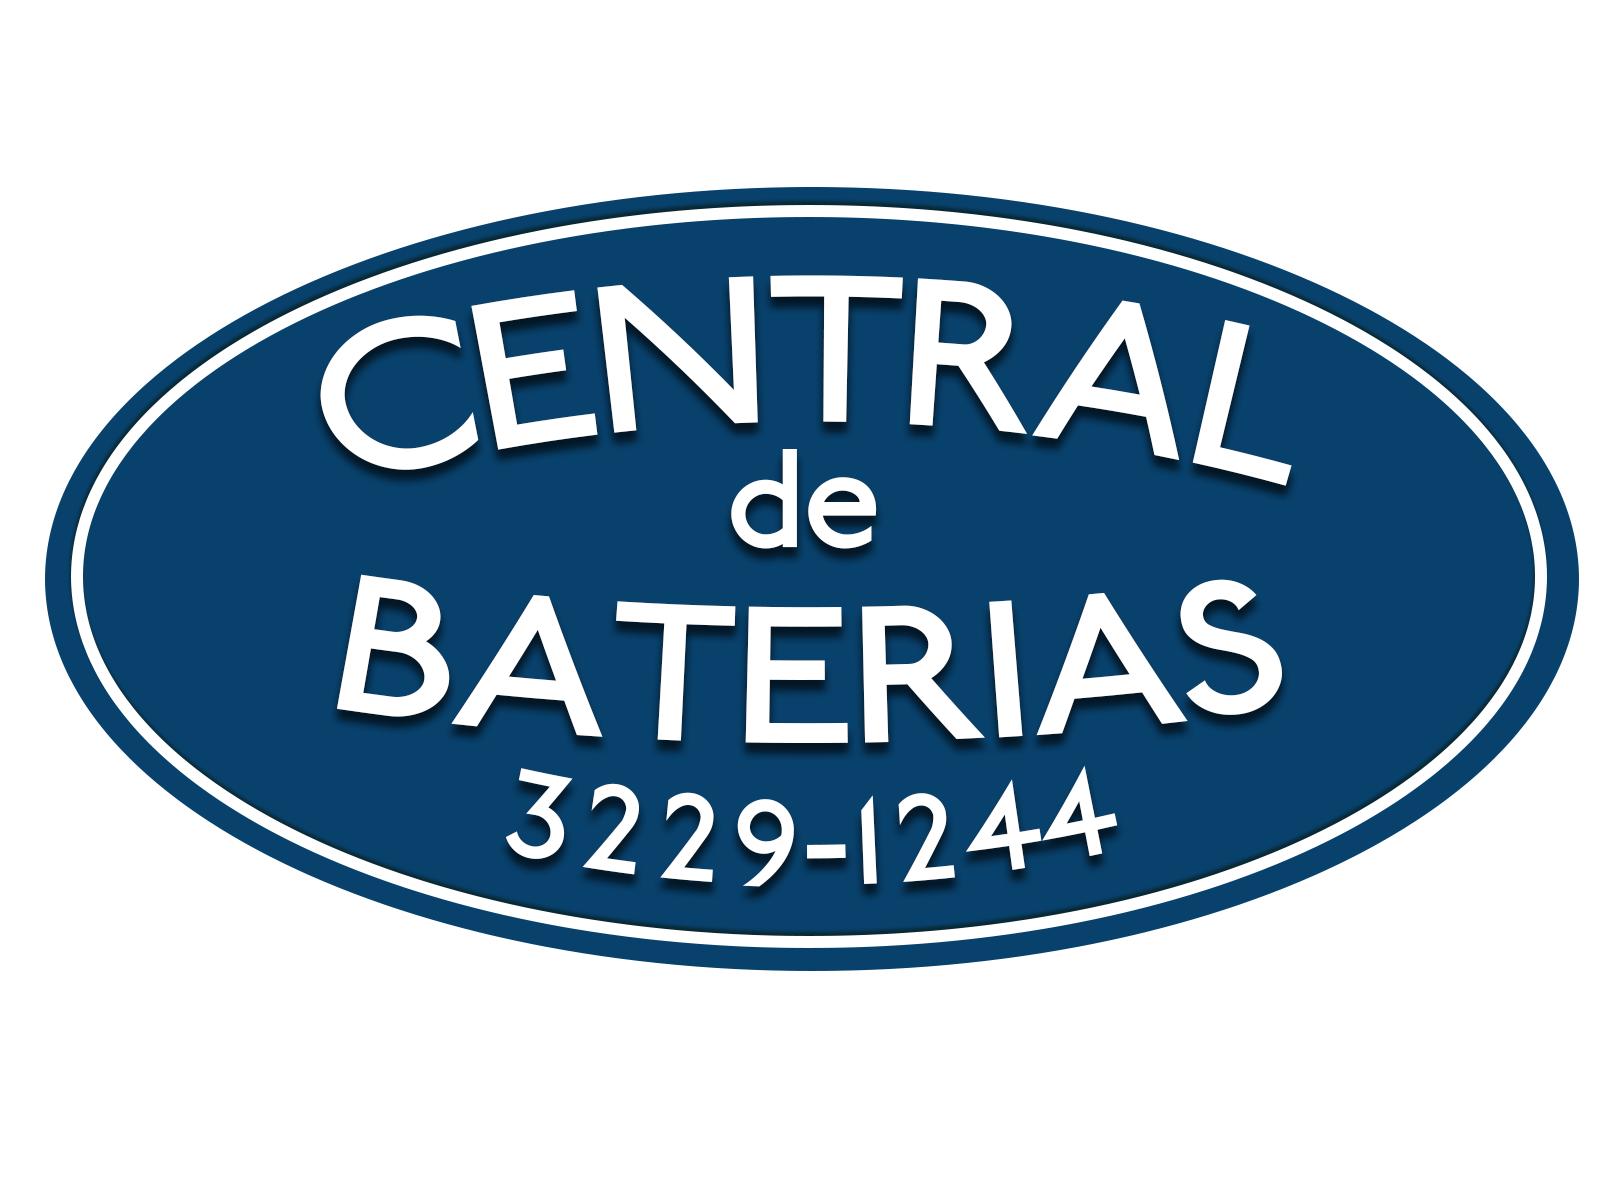 Central de Baterias Ltda